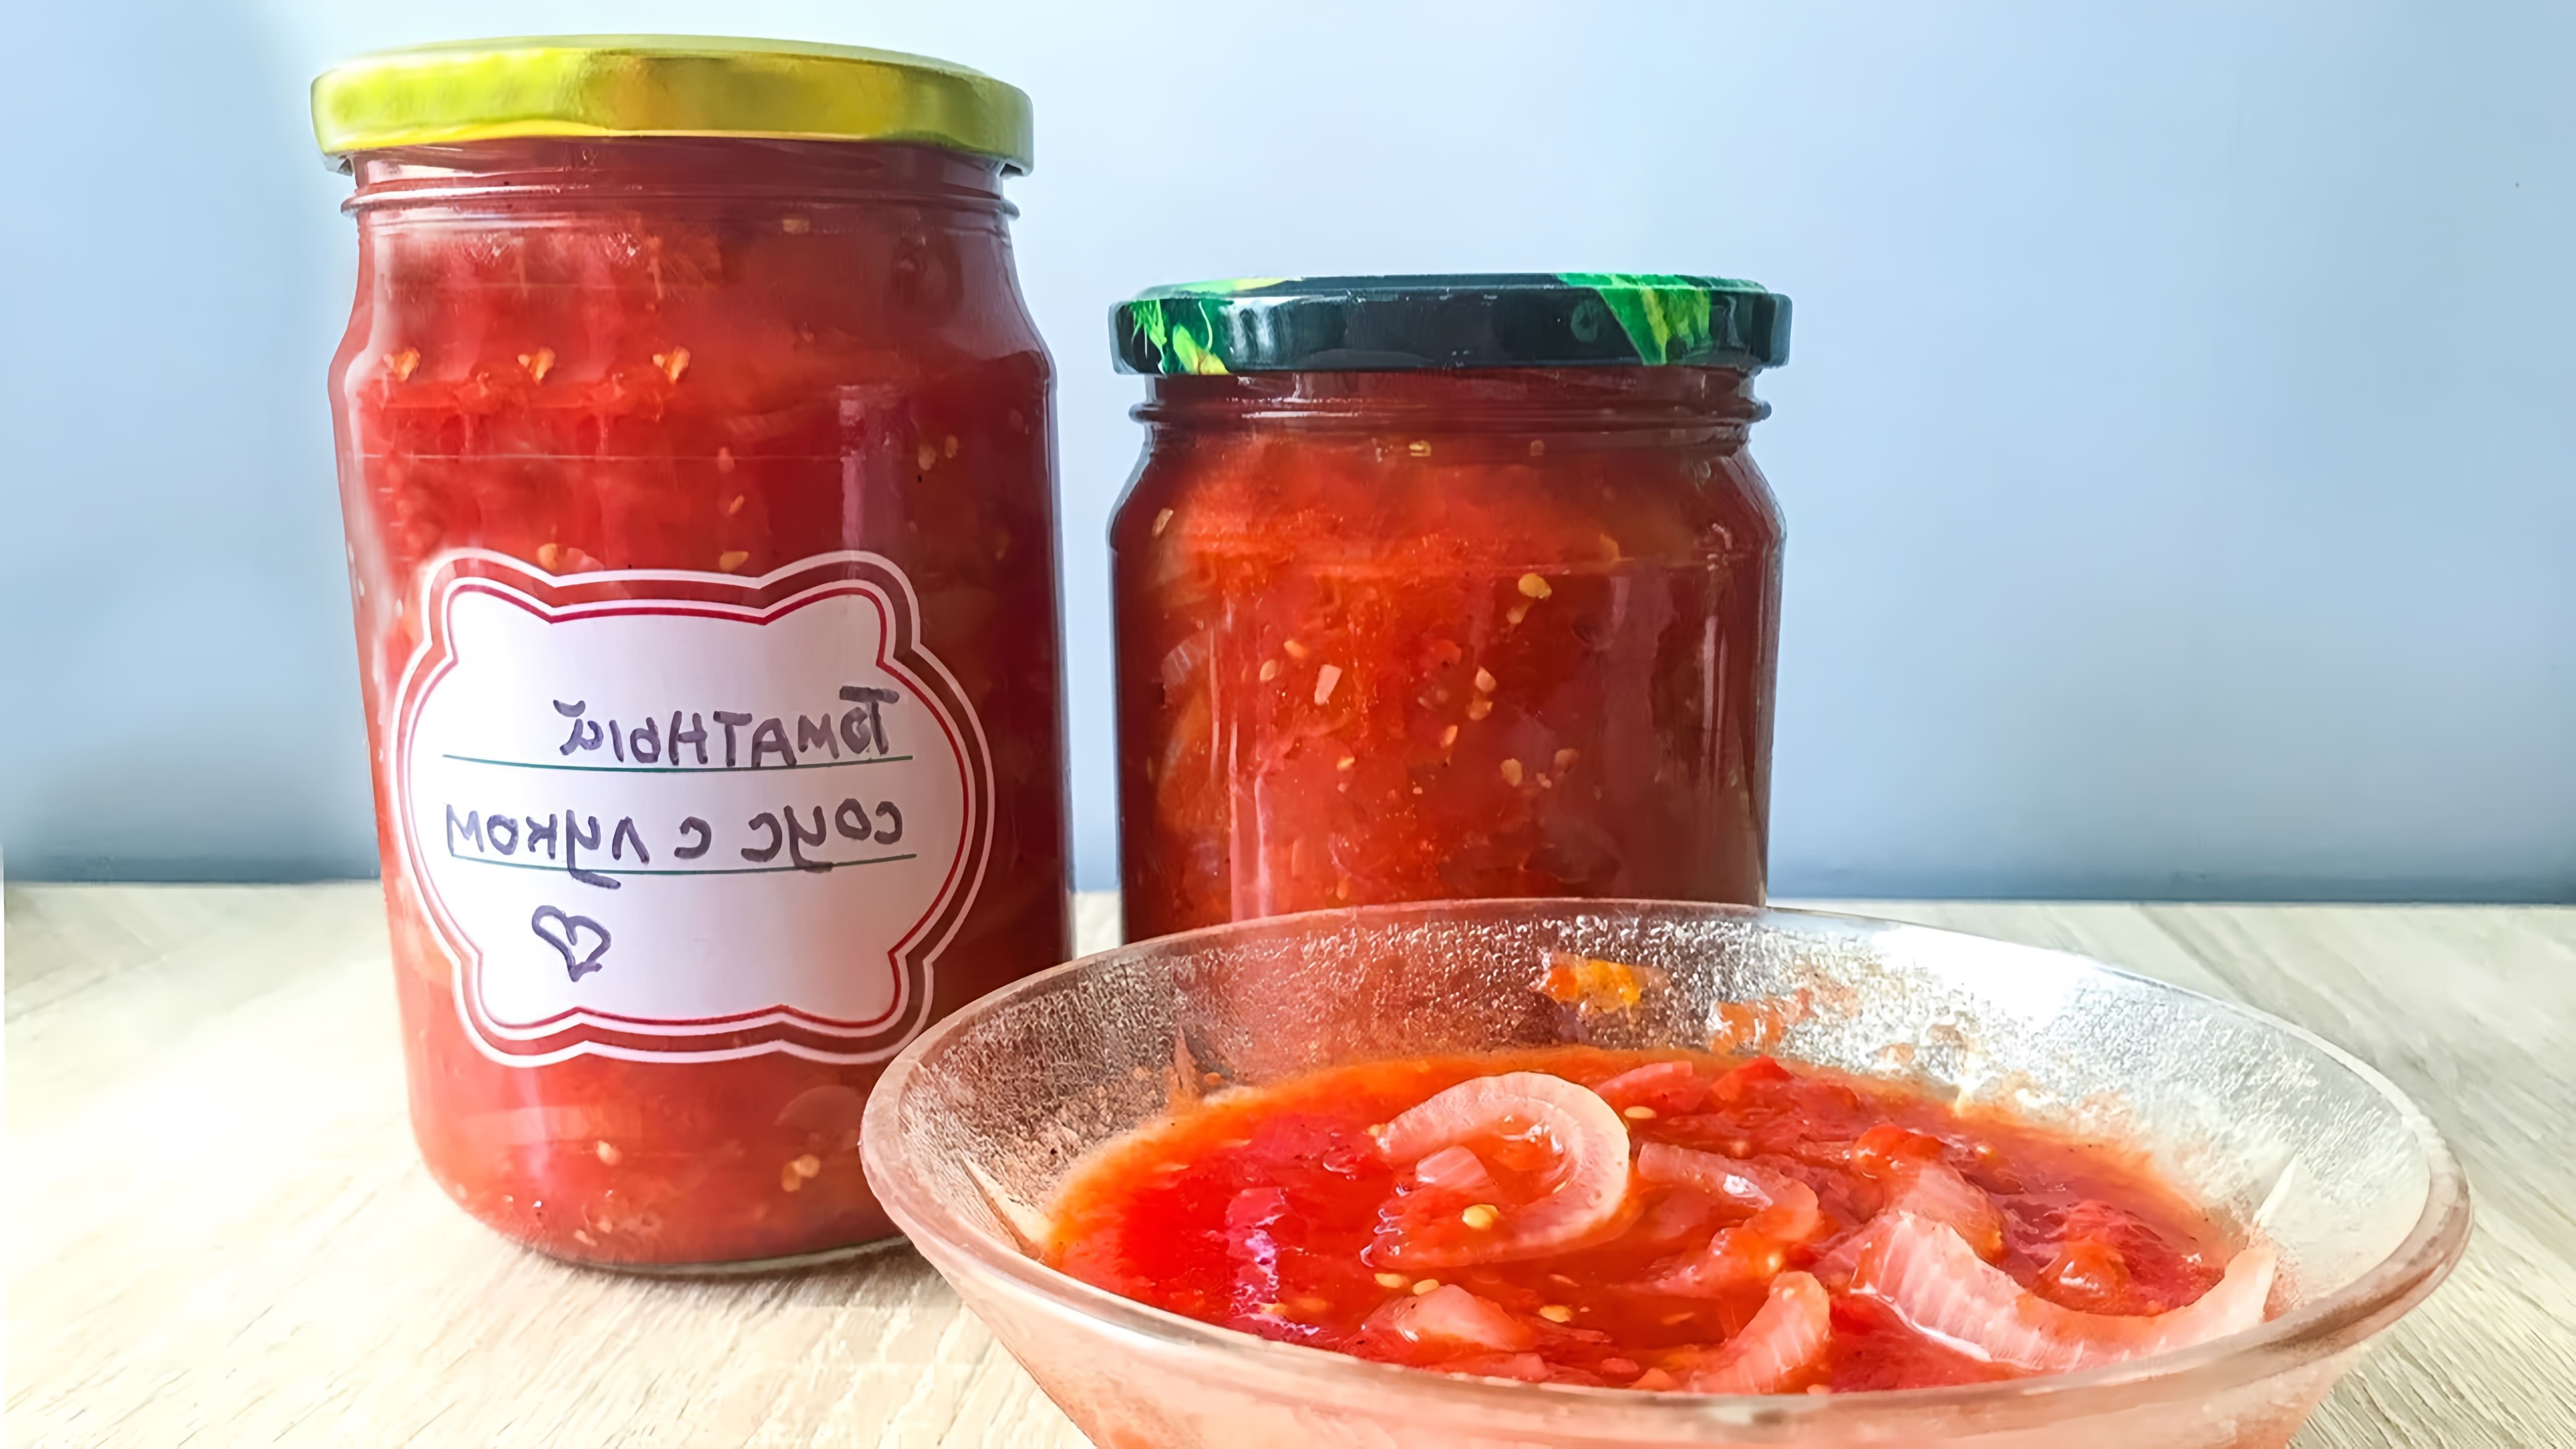 В этом видео демонстрируется процесс приготовления домашнего томатного соуса с луком